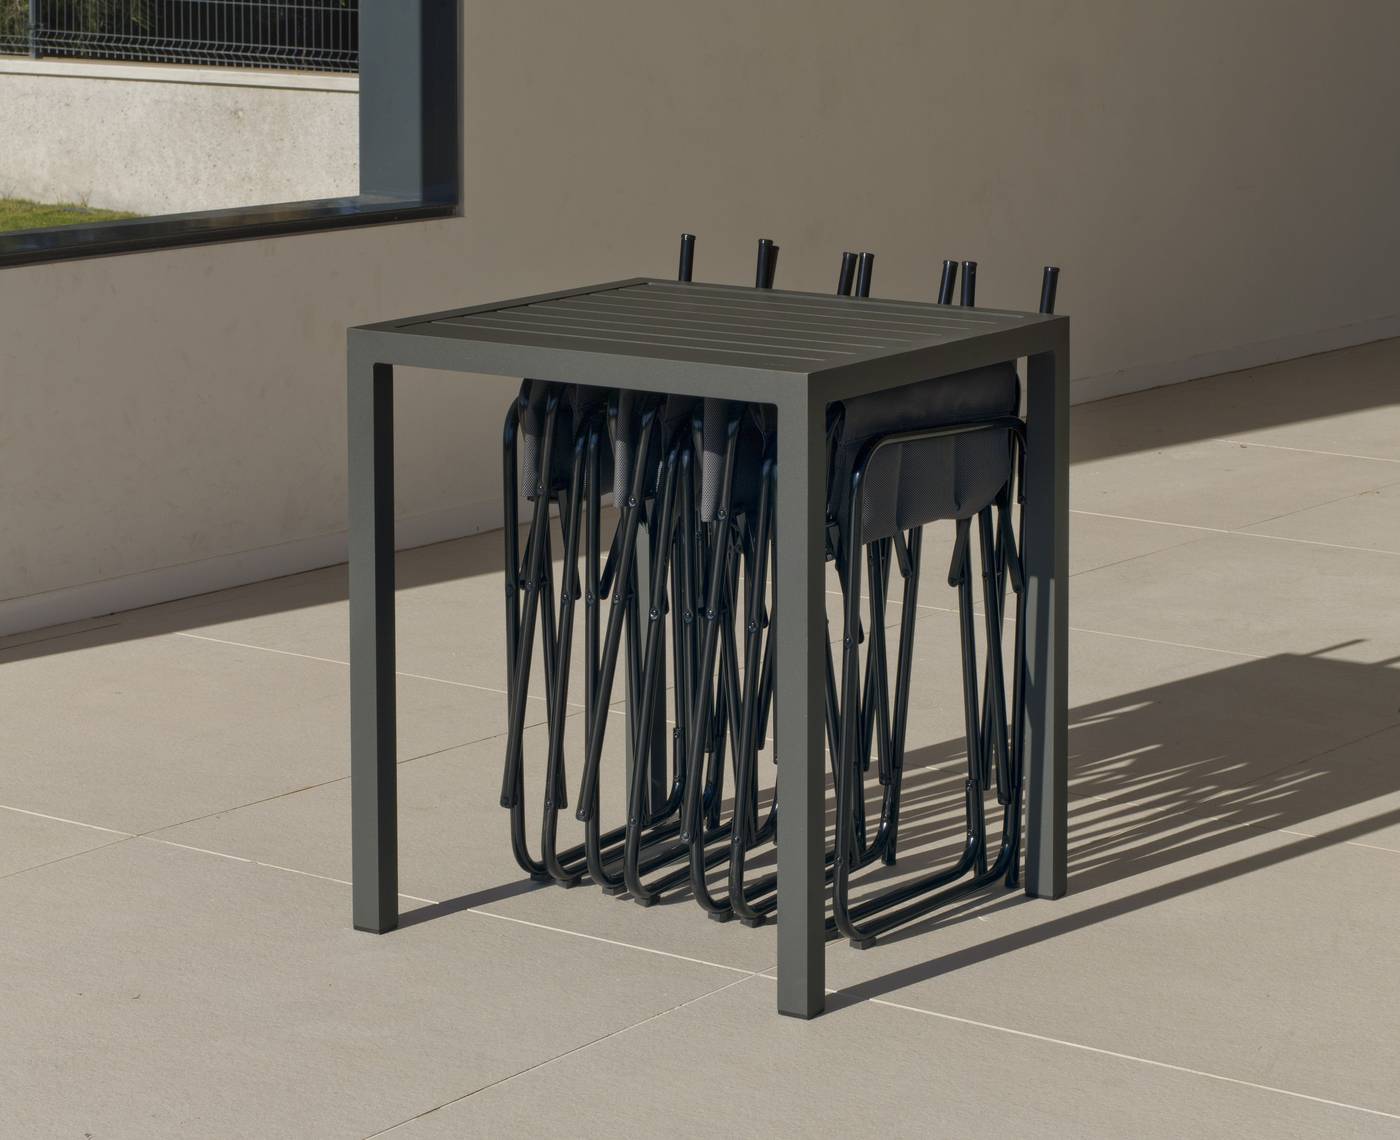 Set Aluminio Melea-Badúa 65-2 - Conjunto aluminio luxe: Mesa cuadrada 65 cm + 2 sillones plegables. Disponible en color blanco o antracita.